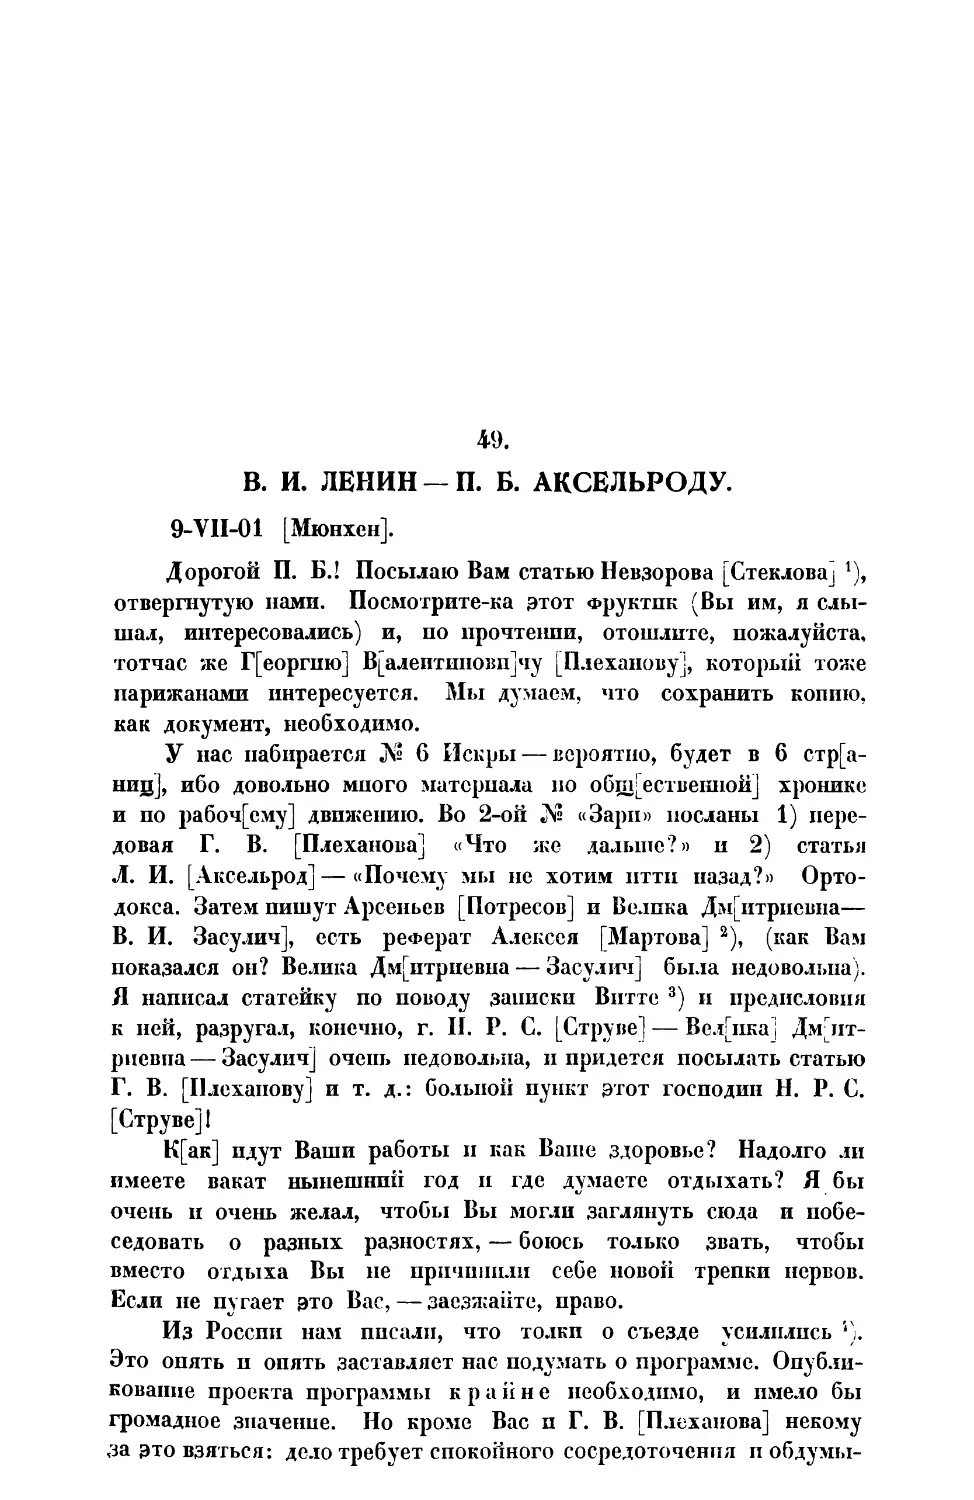 49. В. И. Ленин. — Письмо П. Б. Аксельроду от 9 VII 1901 г.